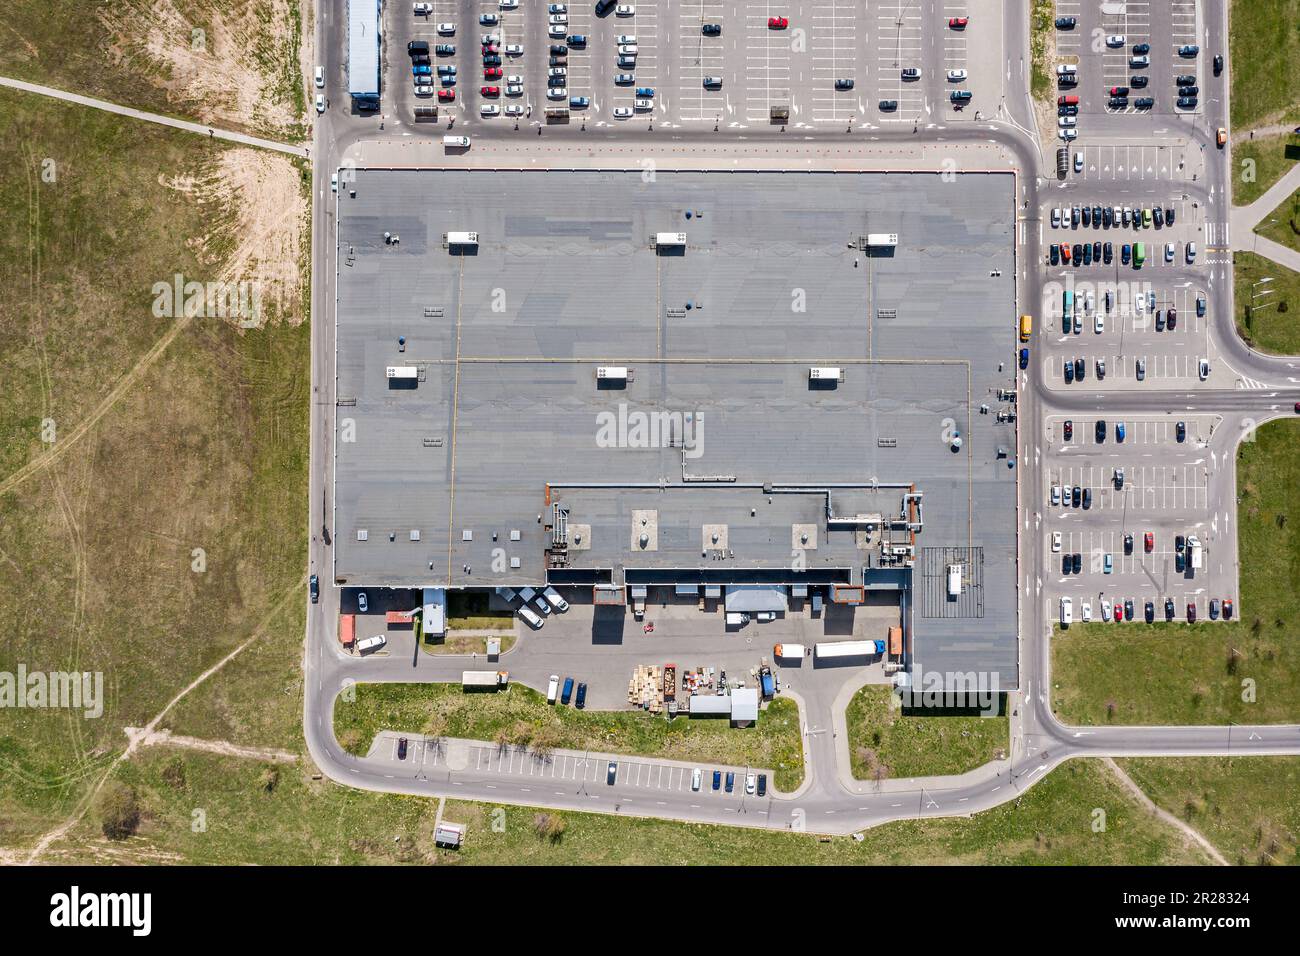 Kieseldach des Einkaufszentrums mit Lüftungsanlagen und Parkplatz mit geparkten Autos. Draufsicht. Stockfoto